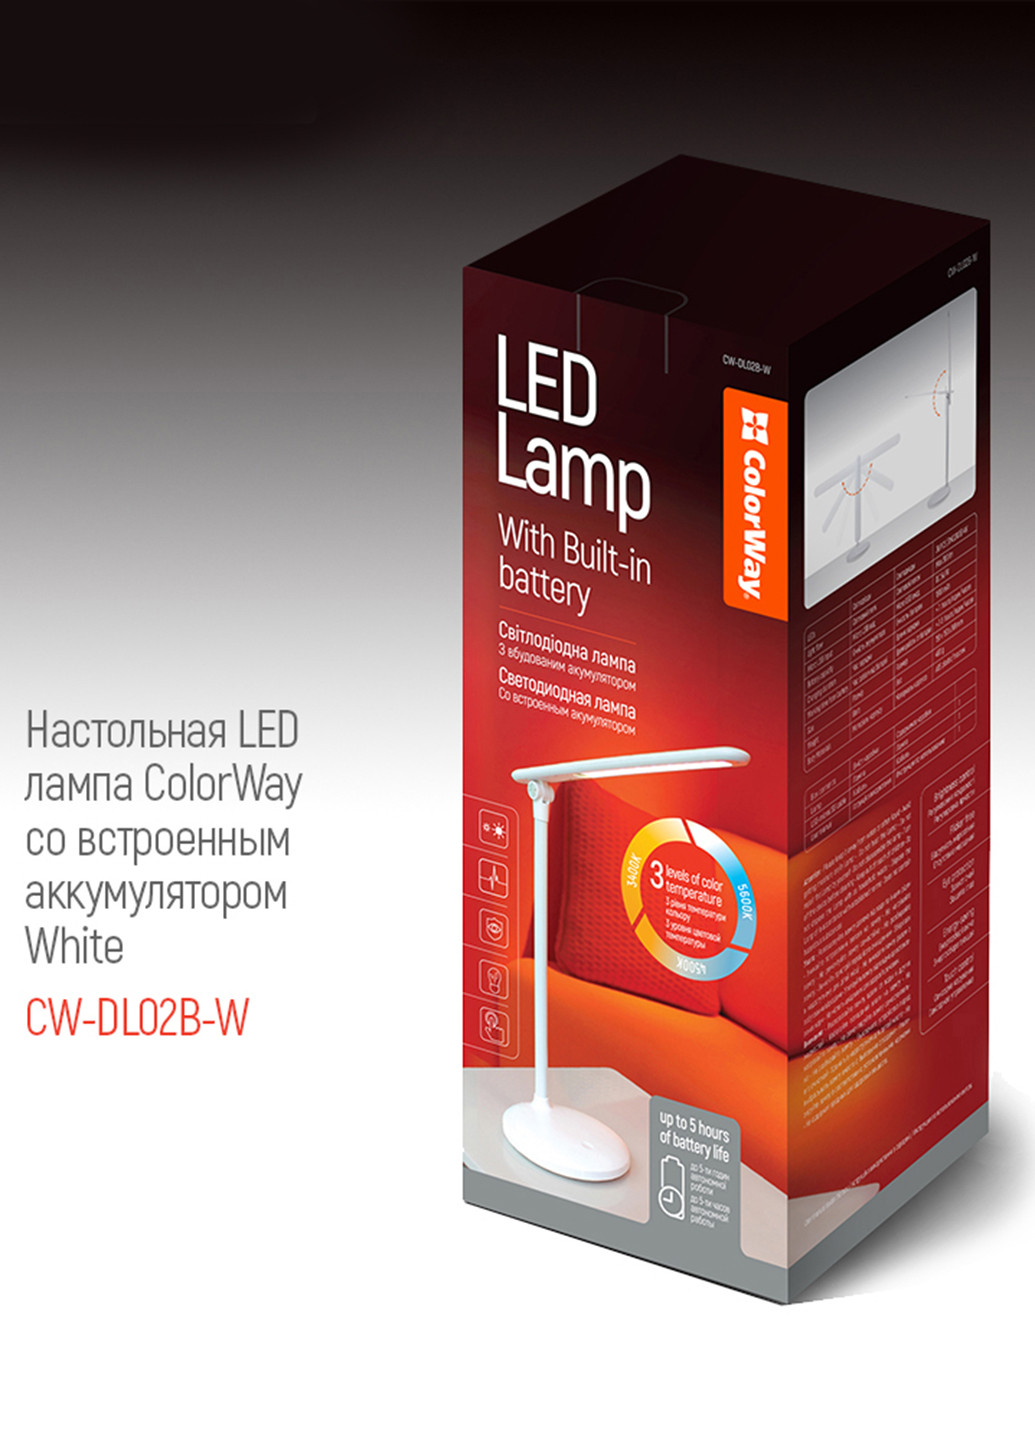 Настольная LED лампа со встроенным аккумулятором White (CW-DL02B-W) Colorway настольная led со встроенным аккумулятором white (cw-dl02b-w) (145694552)